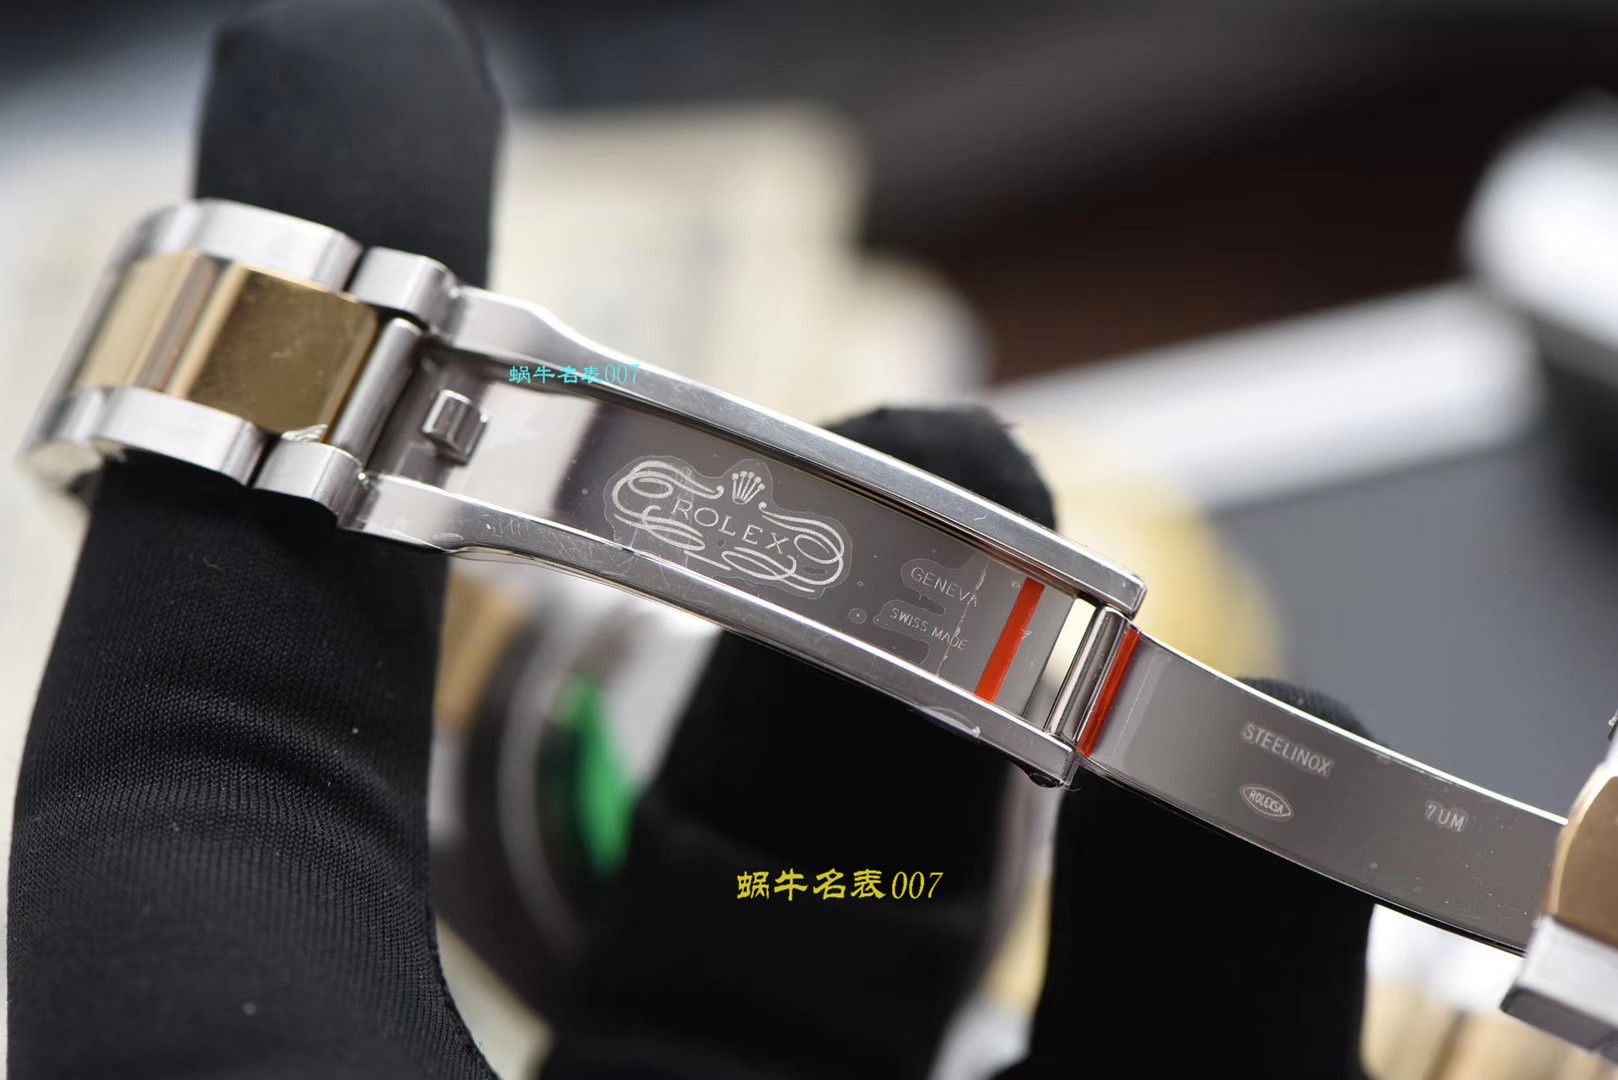 【视频评测AR厂一比一复刻劳力士日志手表】复刻的手表劳力士日志型系列116333-72213香槟盘腕表 / R320